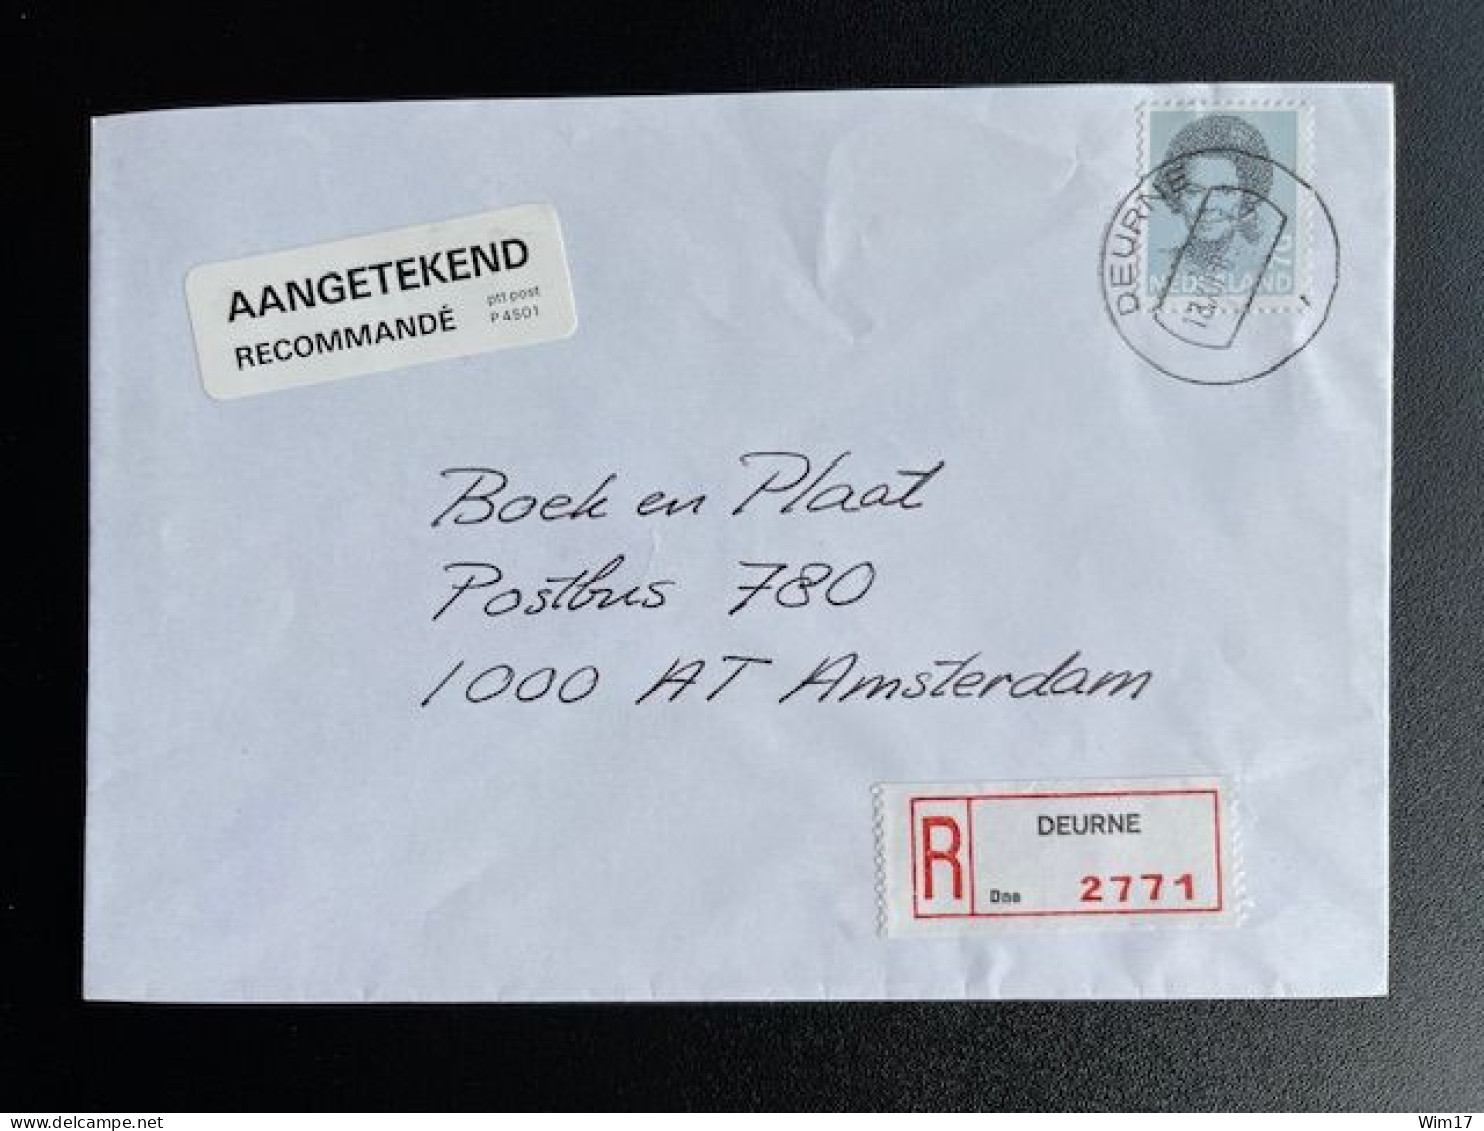 NETHERLANDS 1989 REGISTERED LETTER DEURNE TO AMSTERDAM 18-12-1989 NEDERLAND AANGETEKEND - Briefe U. Dokumente